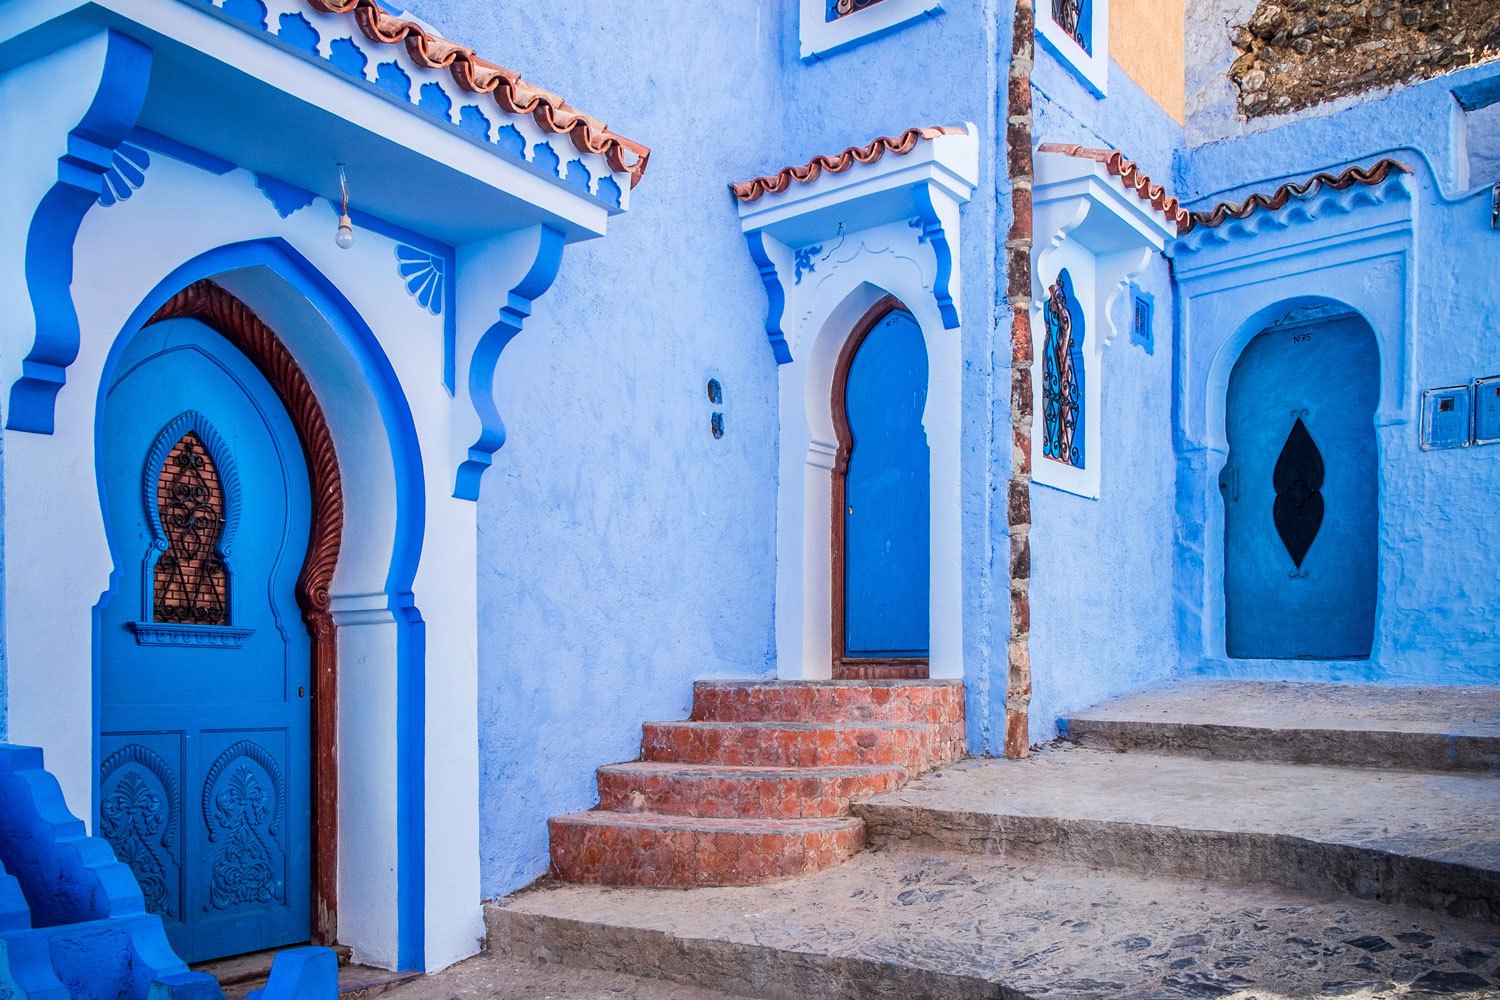 أروع 10 وجهات سياحية في المغرب‎